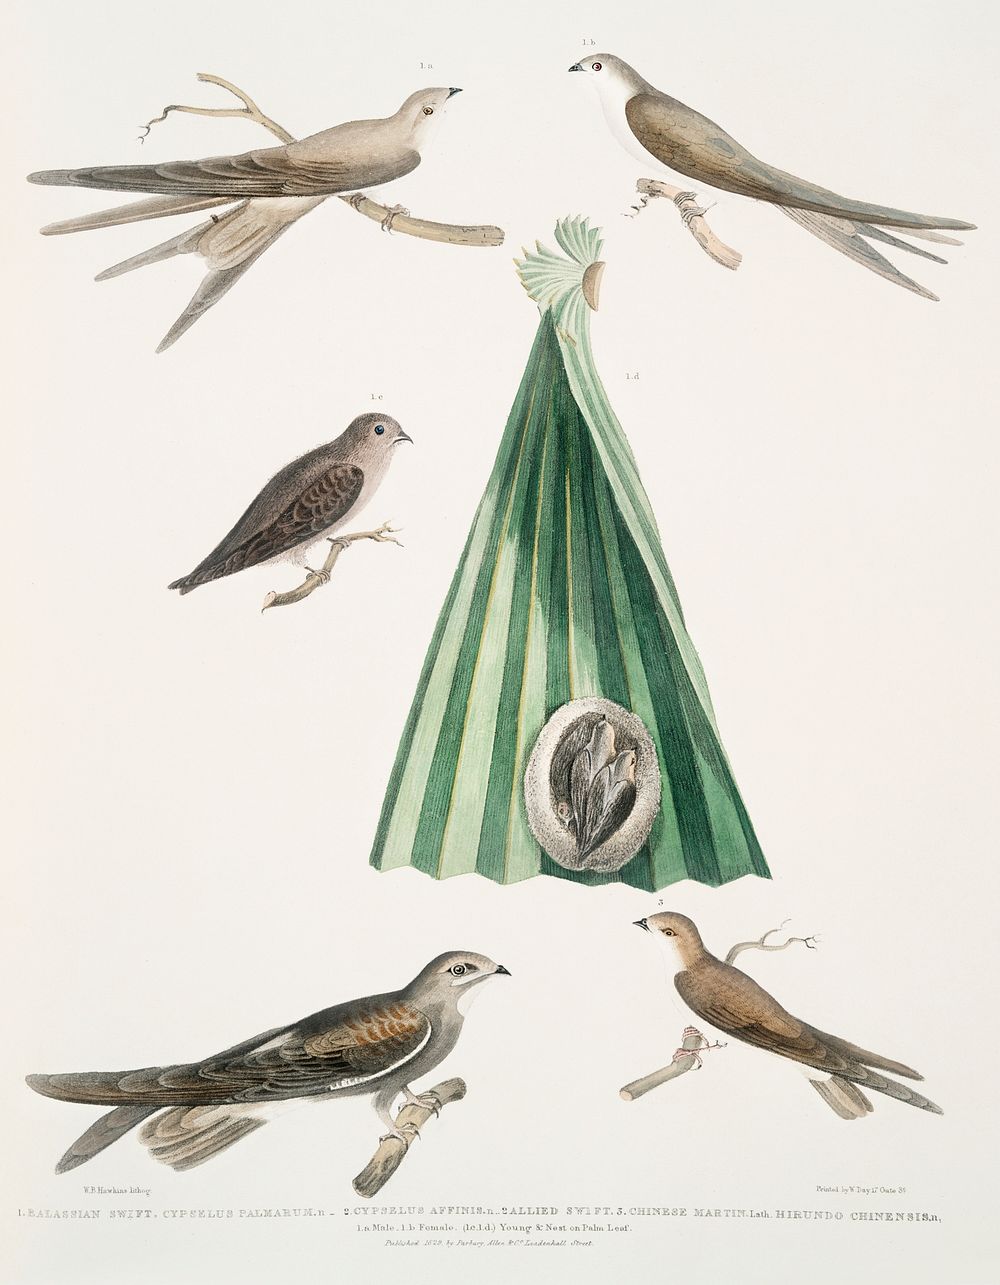 1. Balassian [Balastian] Swift (Cypselus palmarum) 1a.